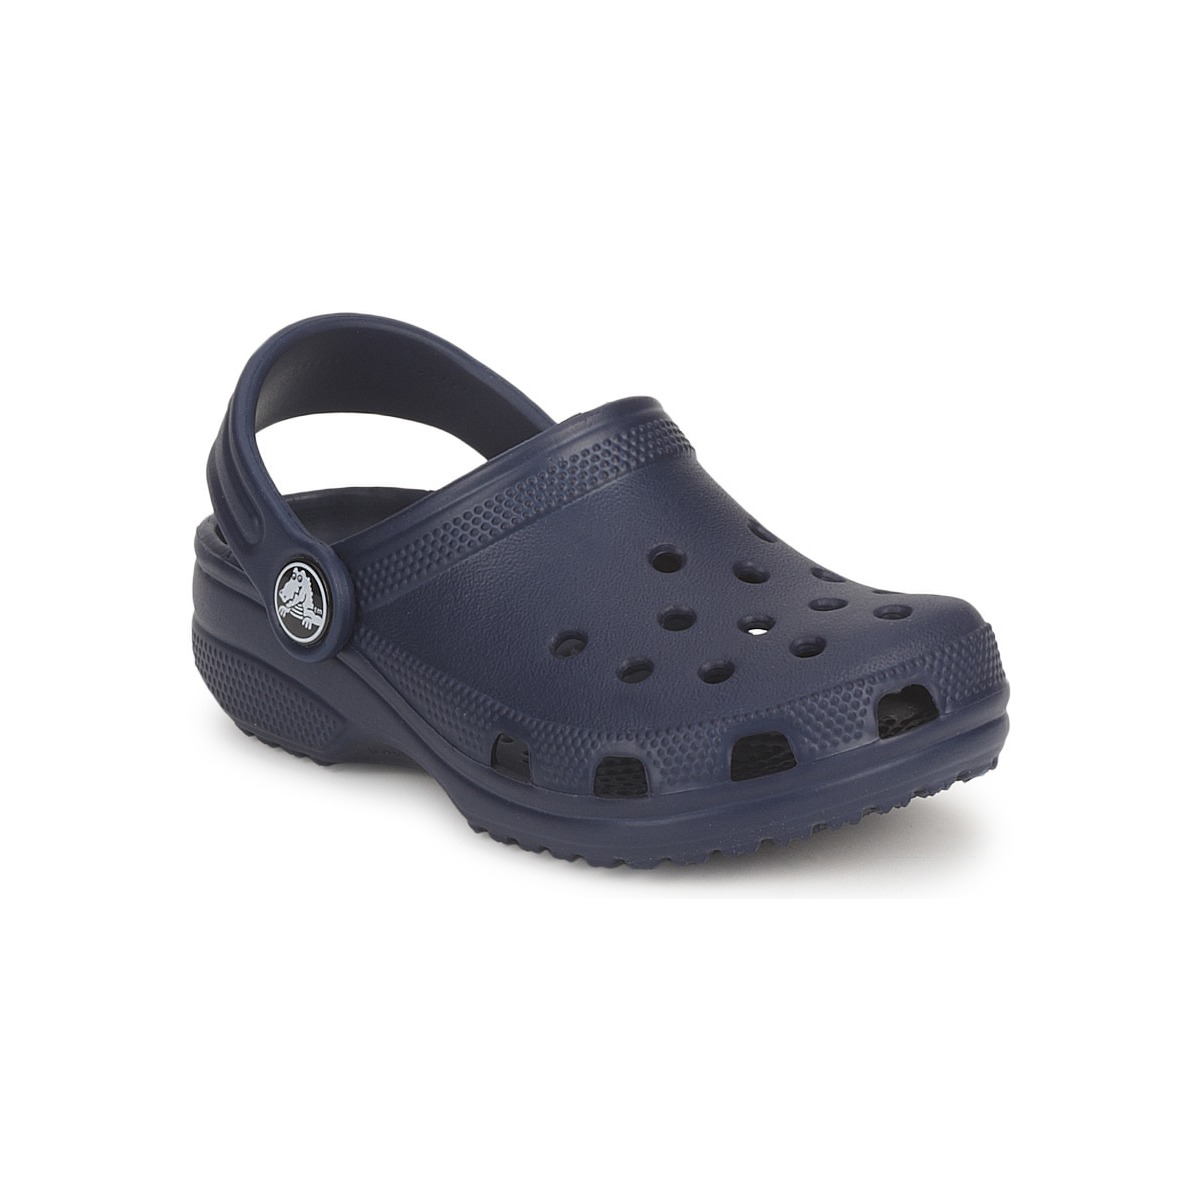 Topánky Deti Nazuvky Crocs CLASSIC KIDS Námornícka modrá